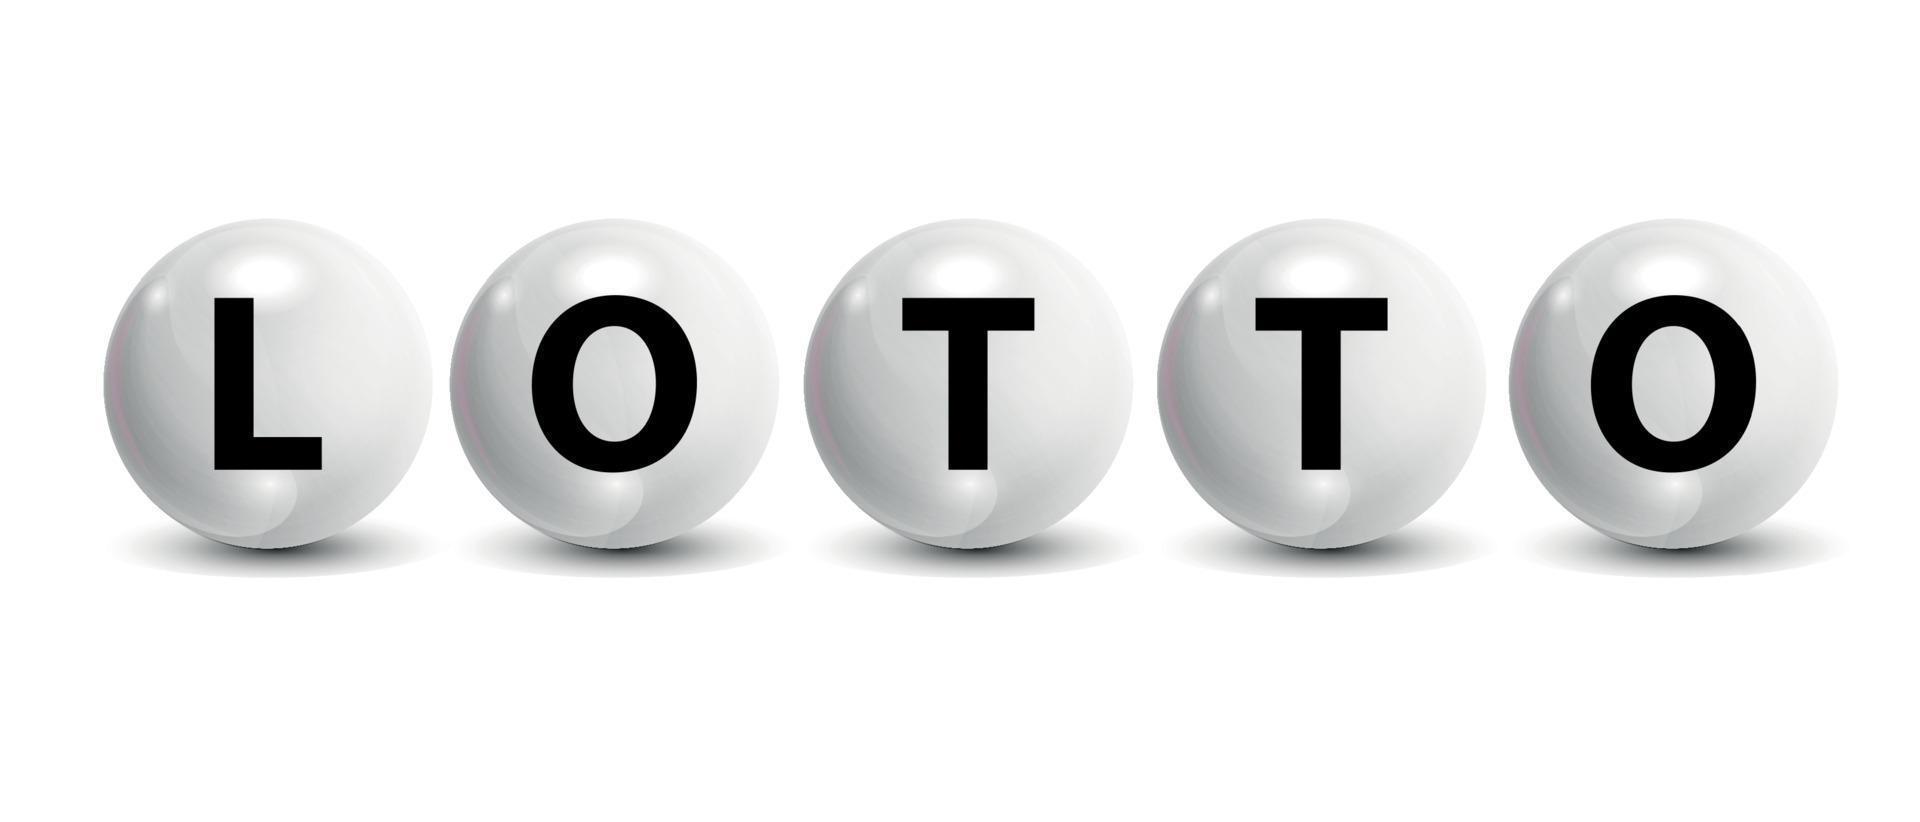 numéros de loterie balle réaliste icône fond illustration vectorielle vecteur